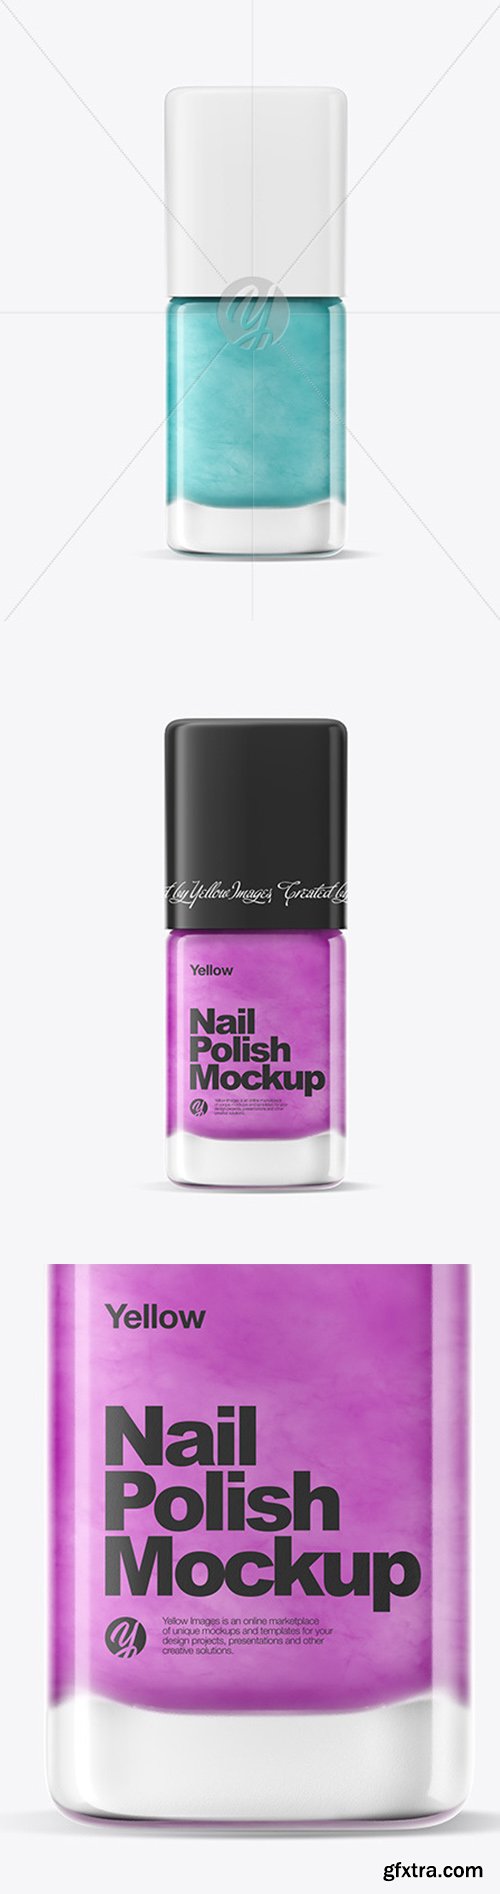 Nail Polish Mockup w/ Matte Cap 52104